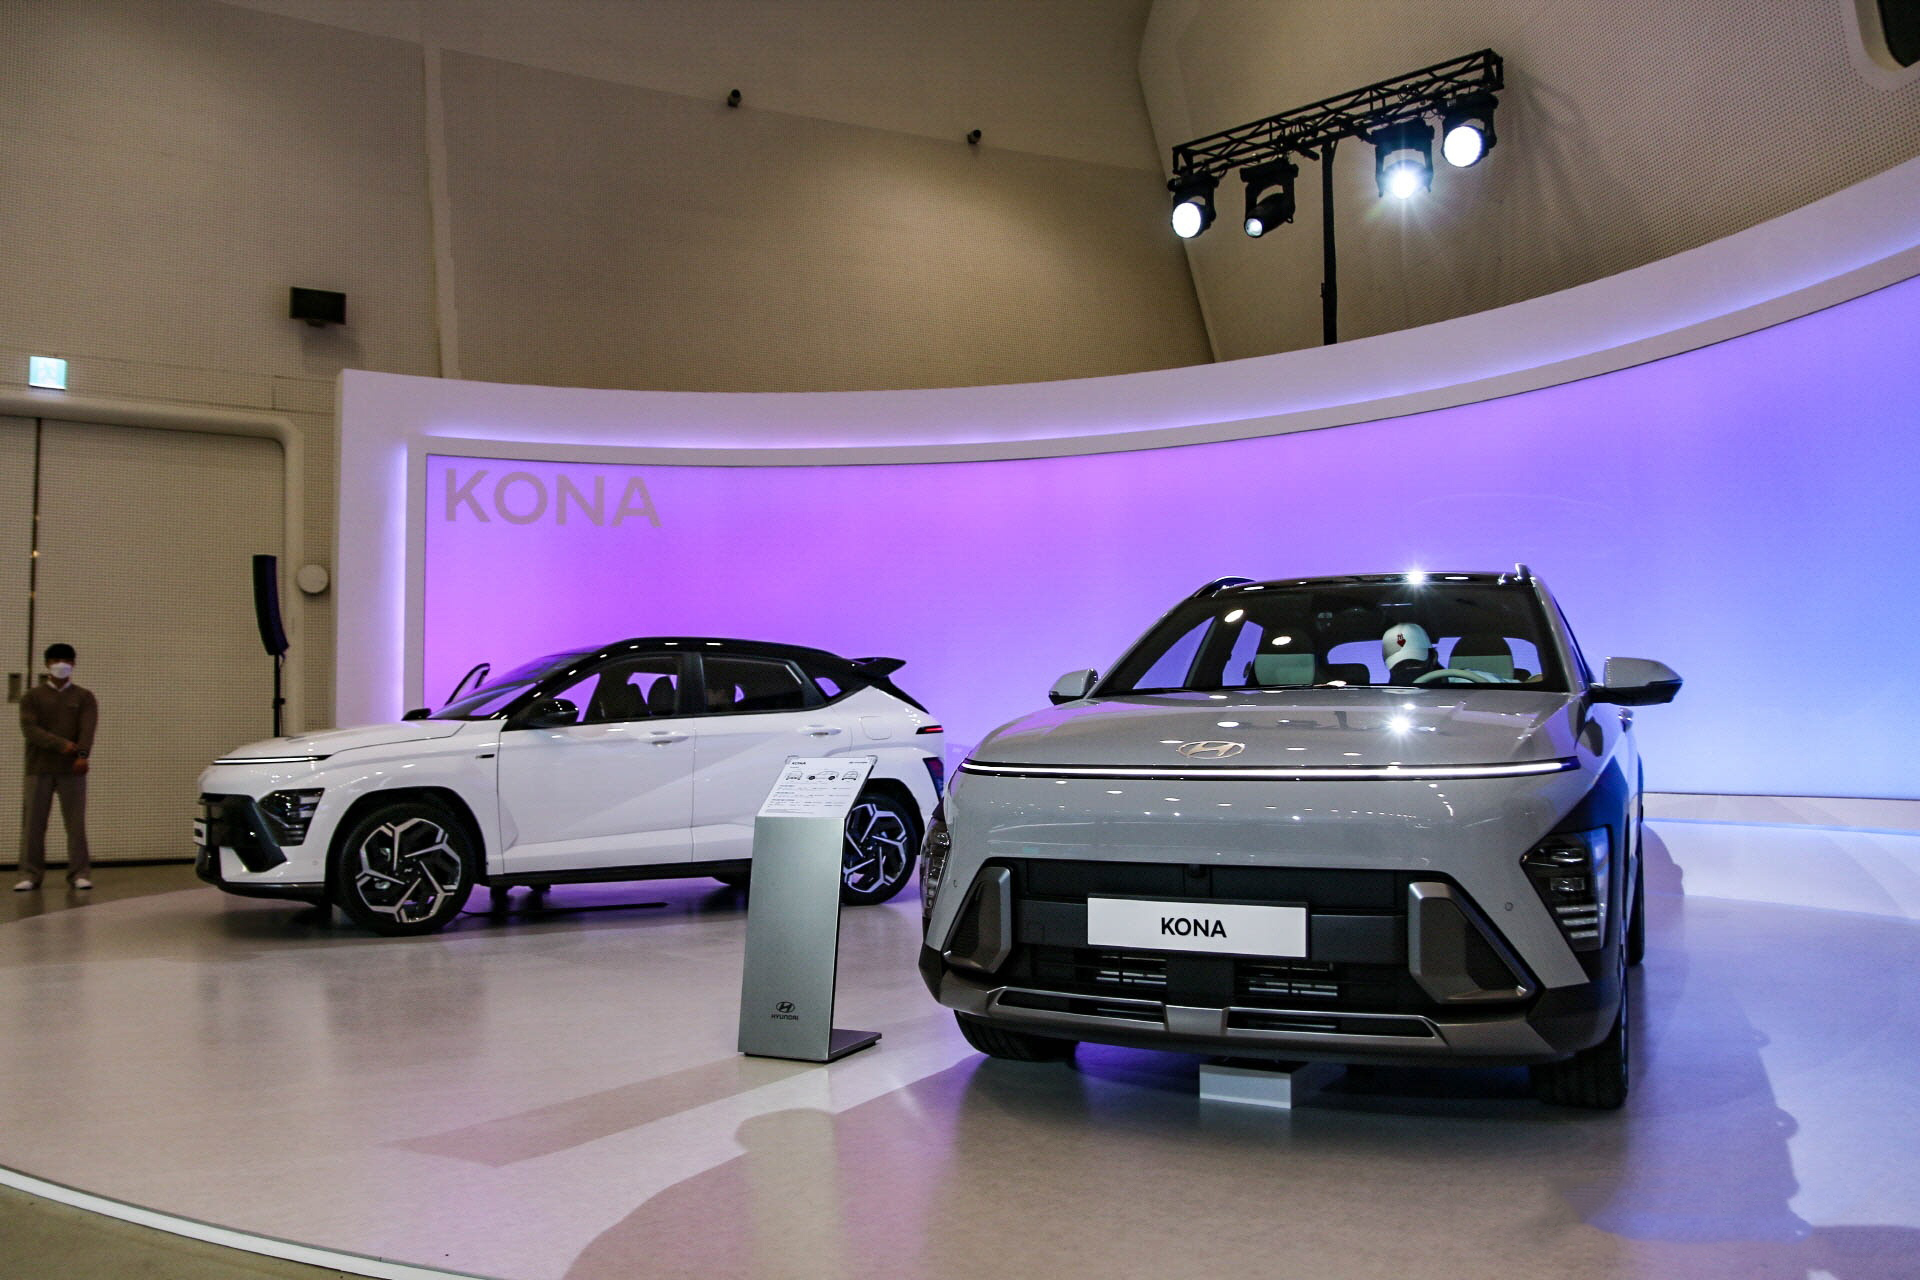 Thiết kế đột phá, Hyundai Kona thế hệ mới ra mắt